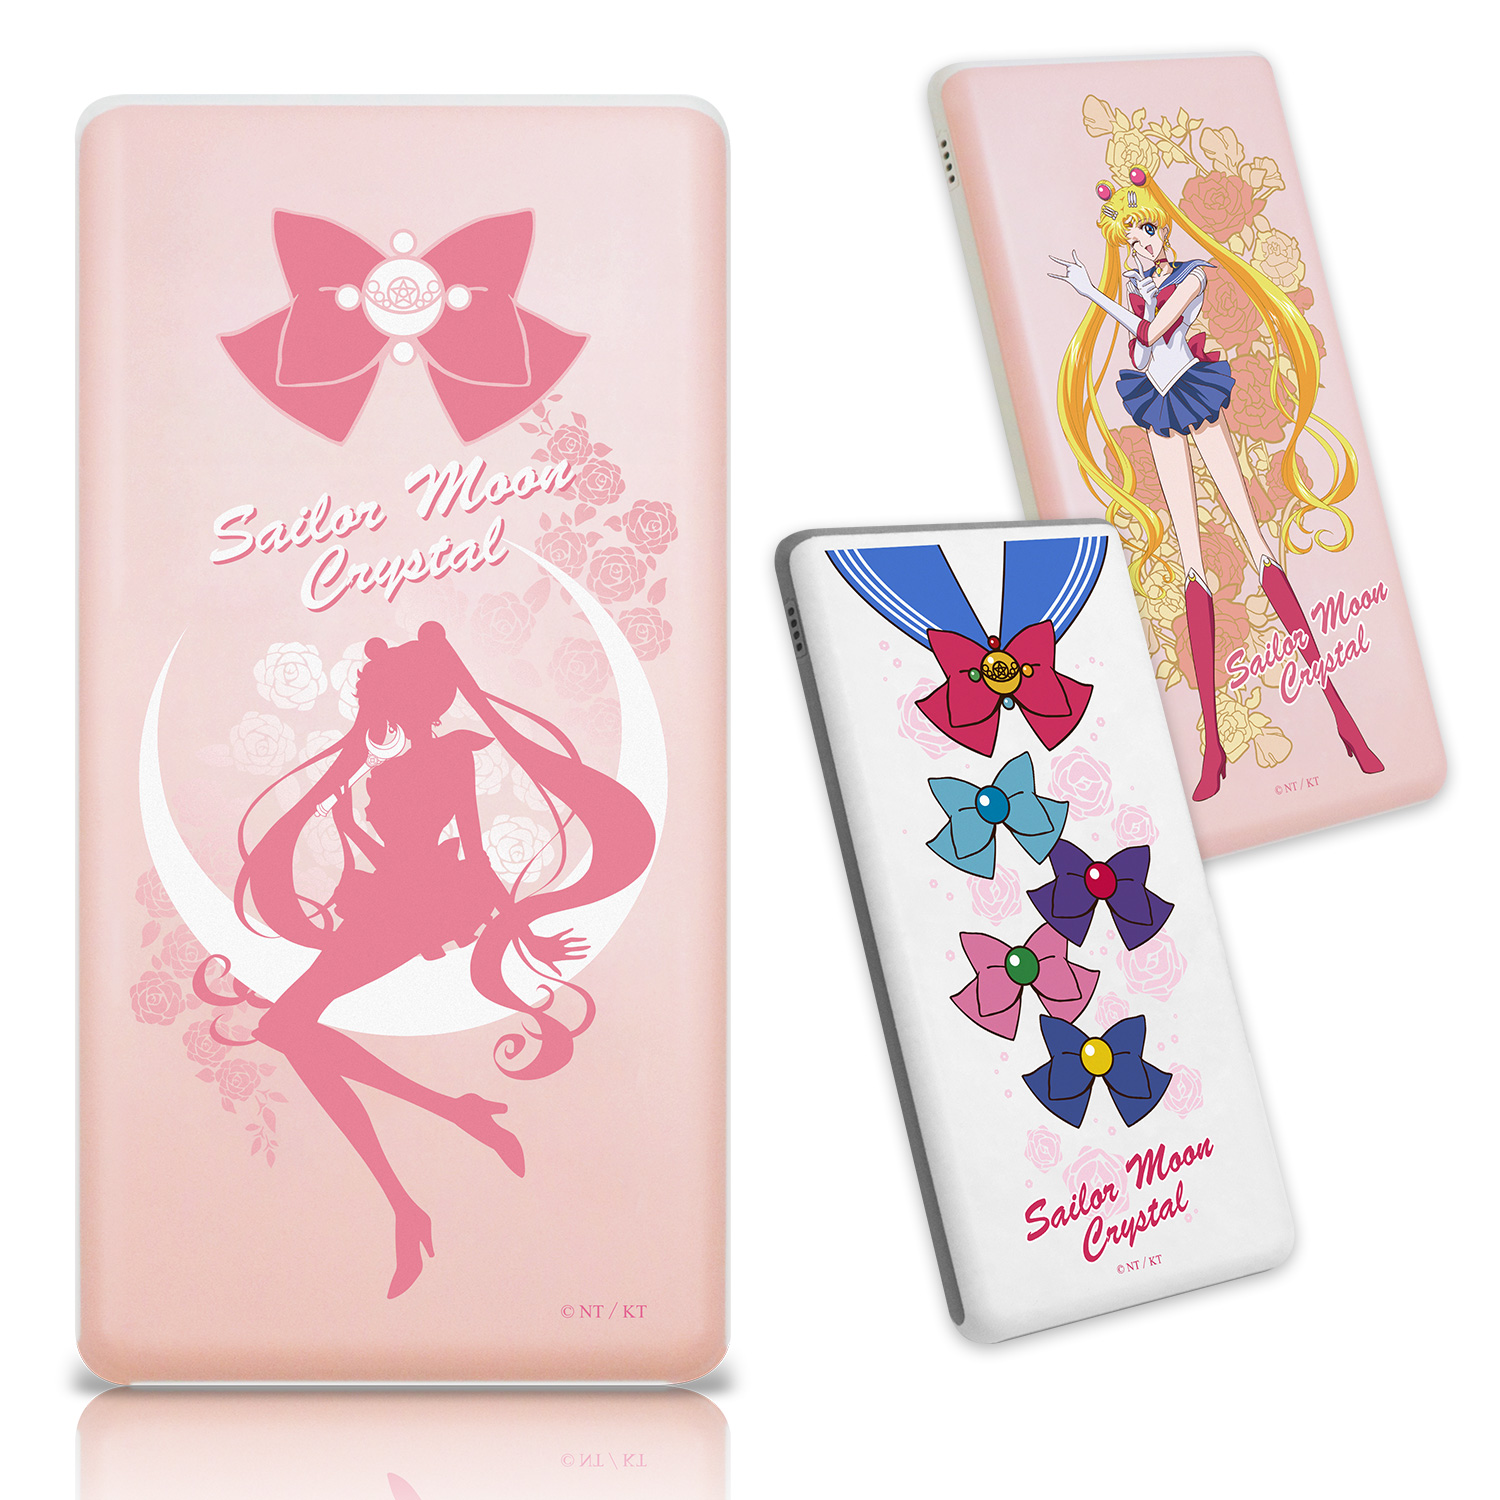 【Sailor Moon】美少女戰士 12000Plus 極致輕薄行動電源